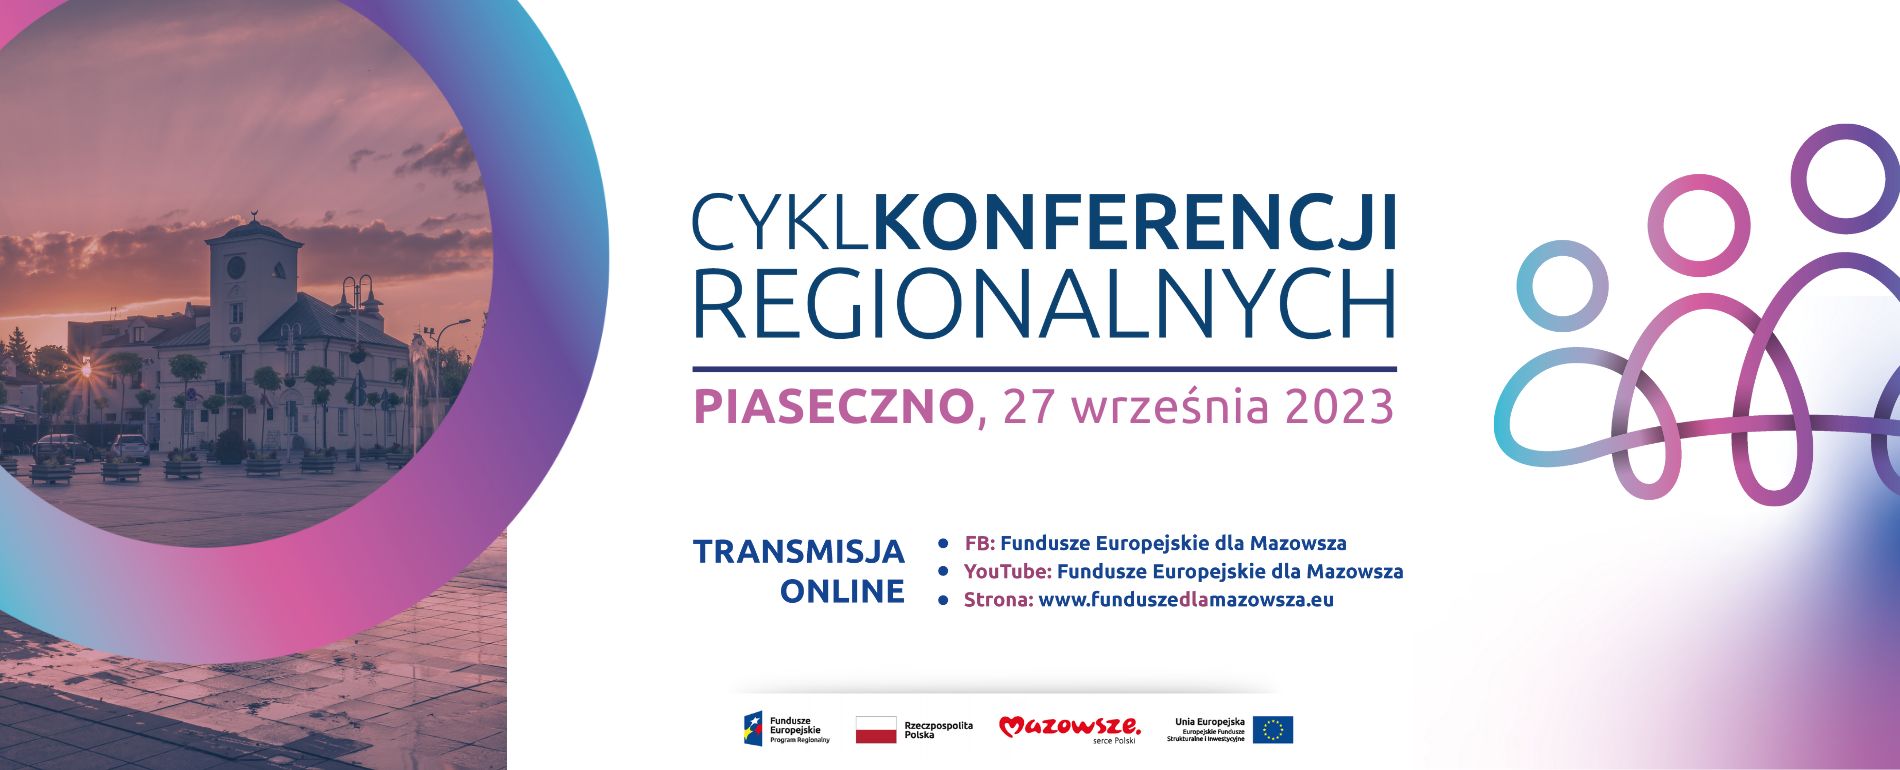 Na grafice znajduje się napis: Cykl Konferencji Regionalnych Piaseczno 27 września 2023, poniżej zamieszczone są linki do strony internetowej funduszeeuropejskiedlamazowsza.eu oraz profili na facebooku oraz yt. 